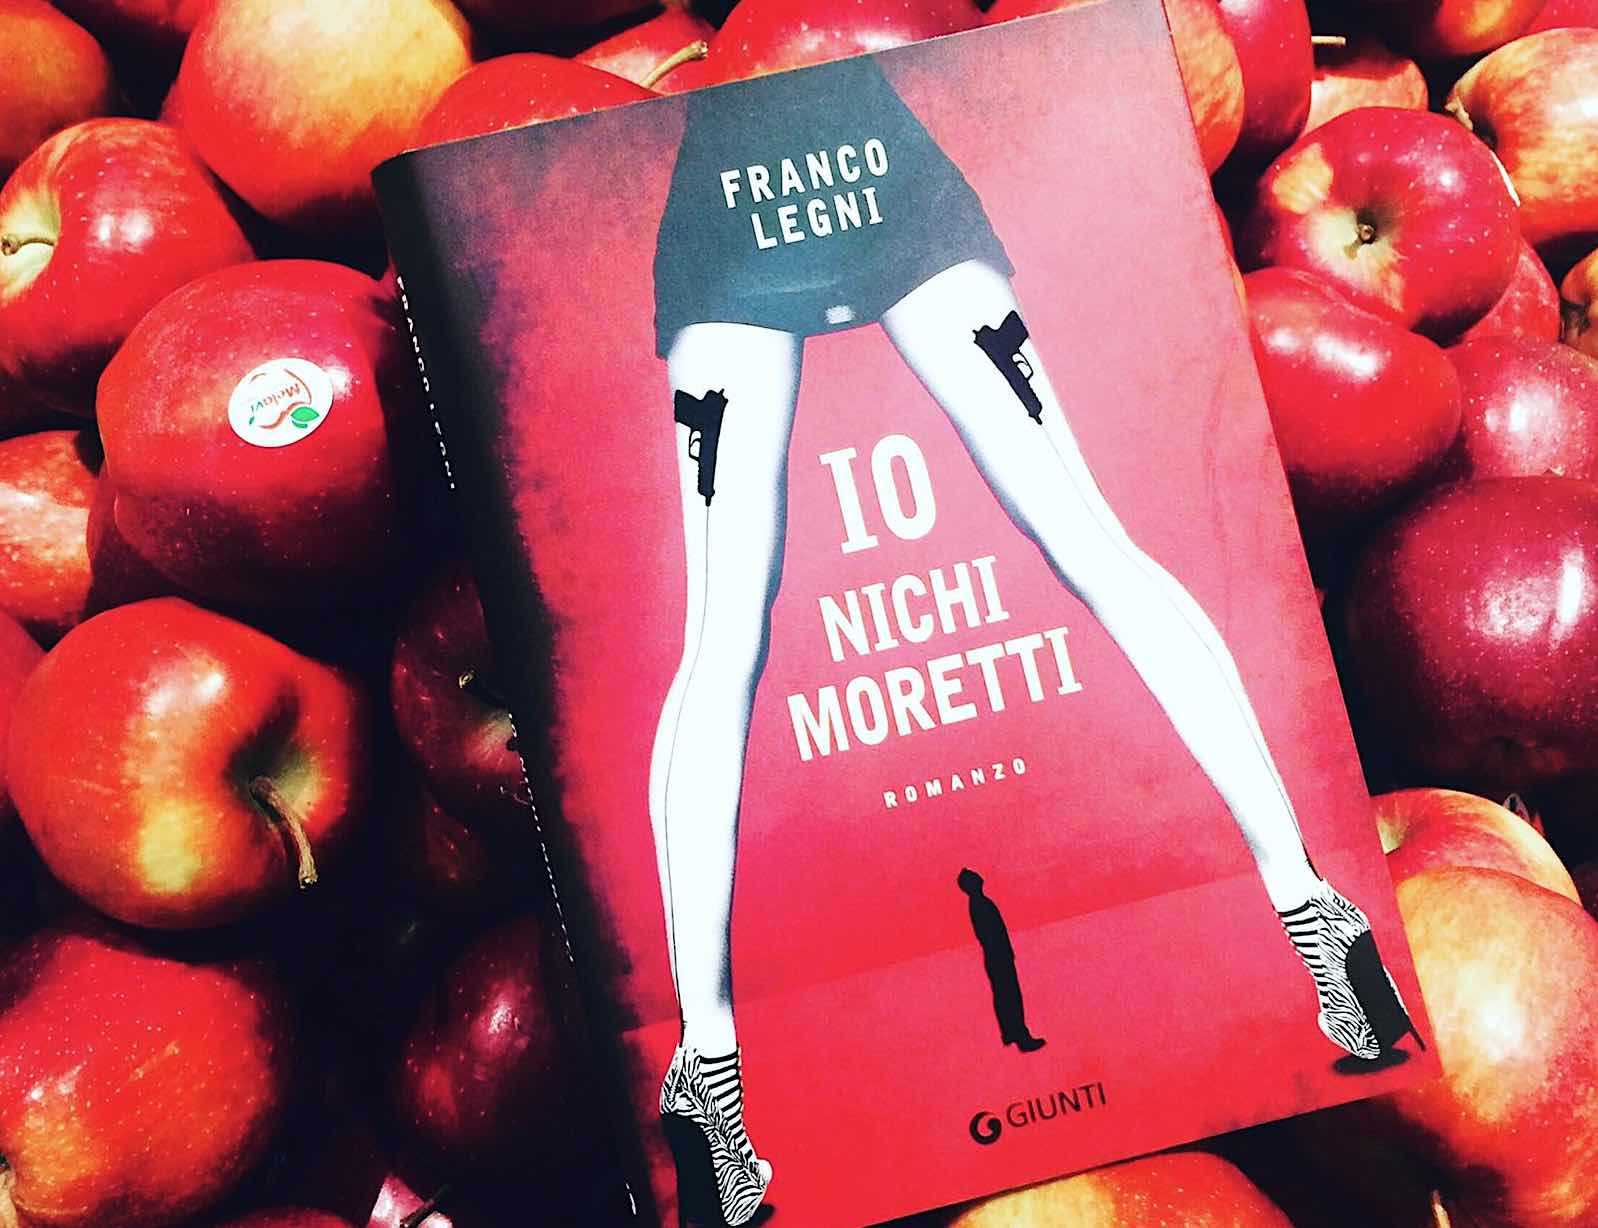 Intervista al toscanissimo Franco Legni autore del romanzo pulp di successo ambientato a Prato "Io, Nichi Moretti" edito da Giunti